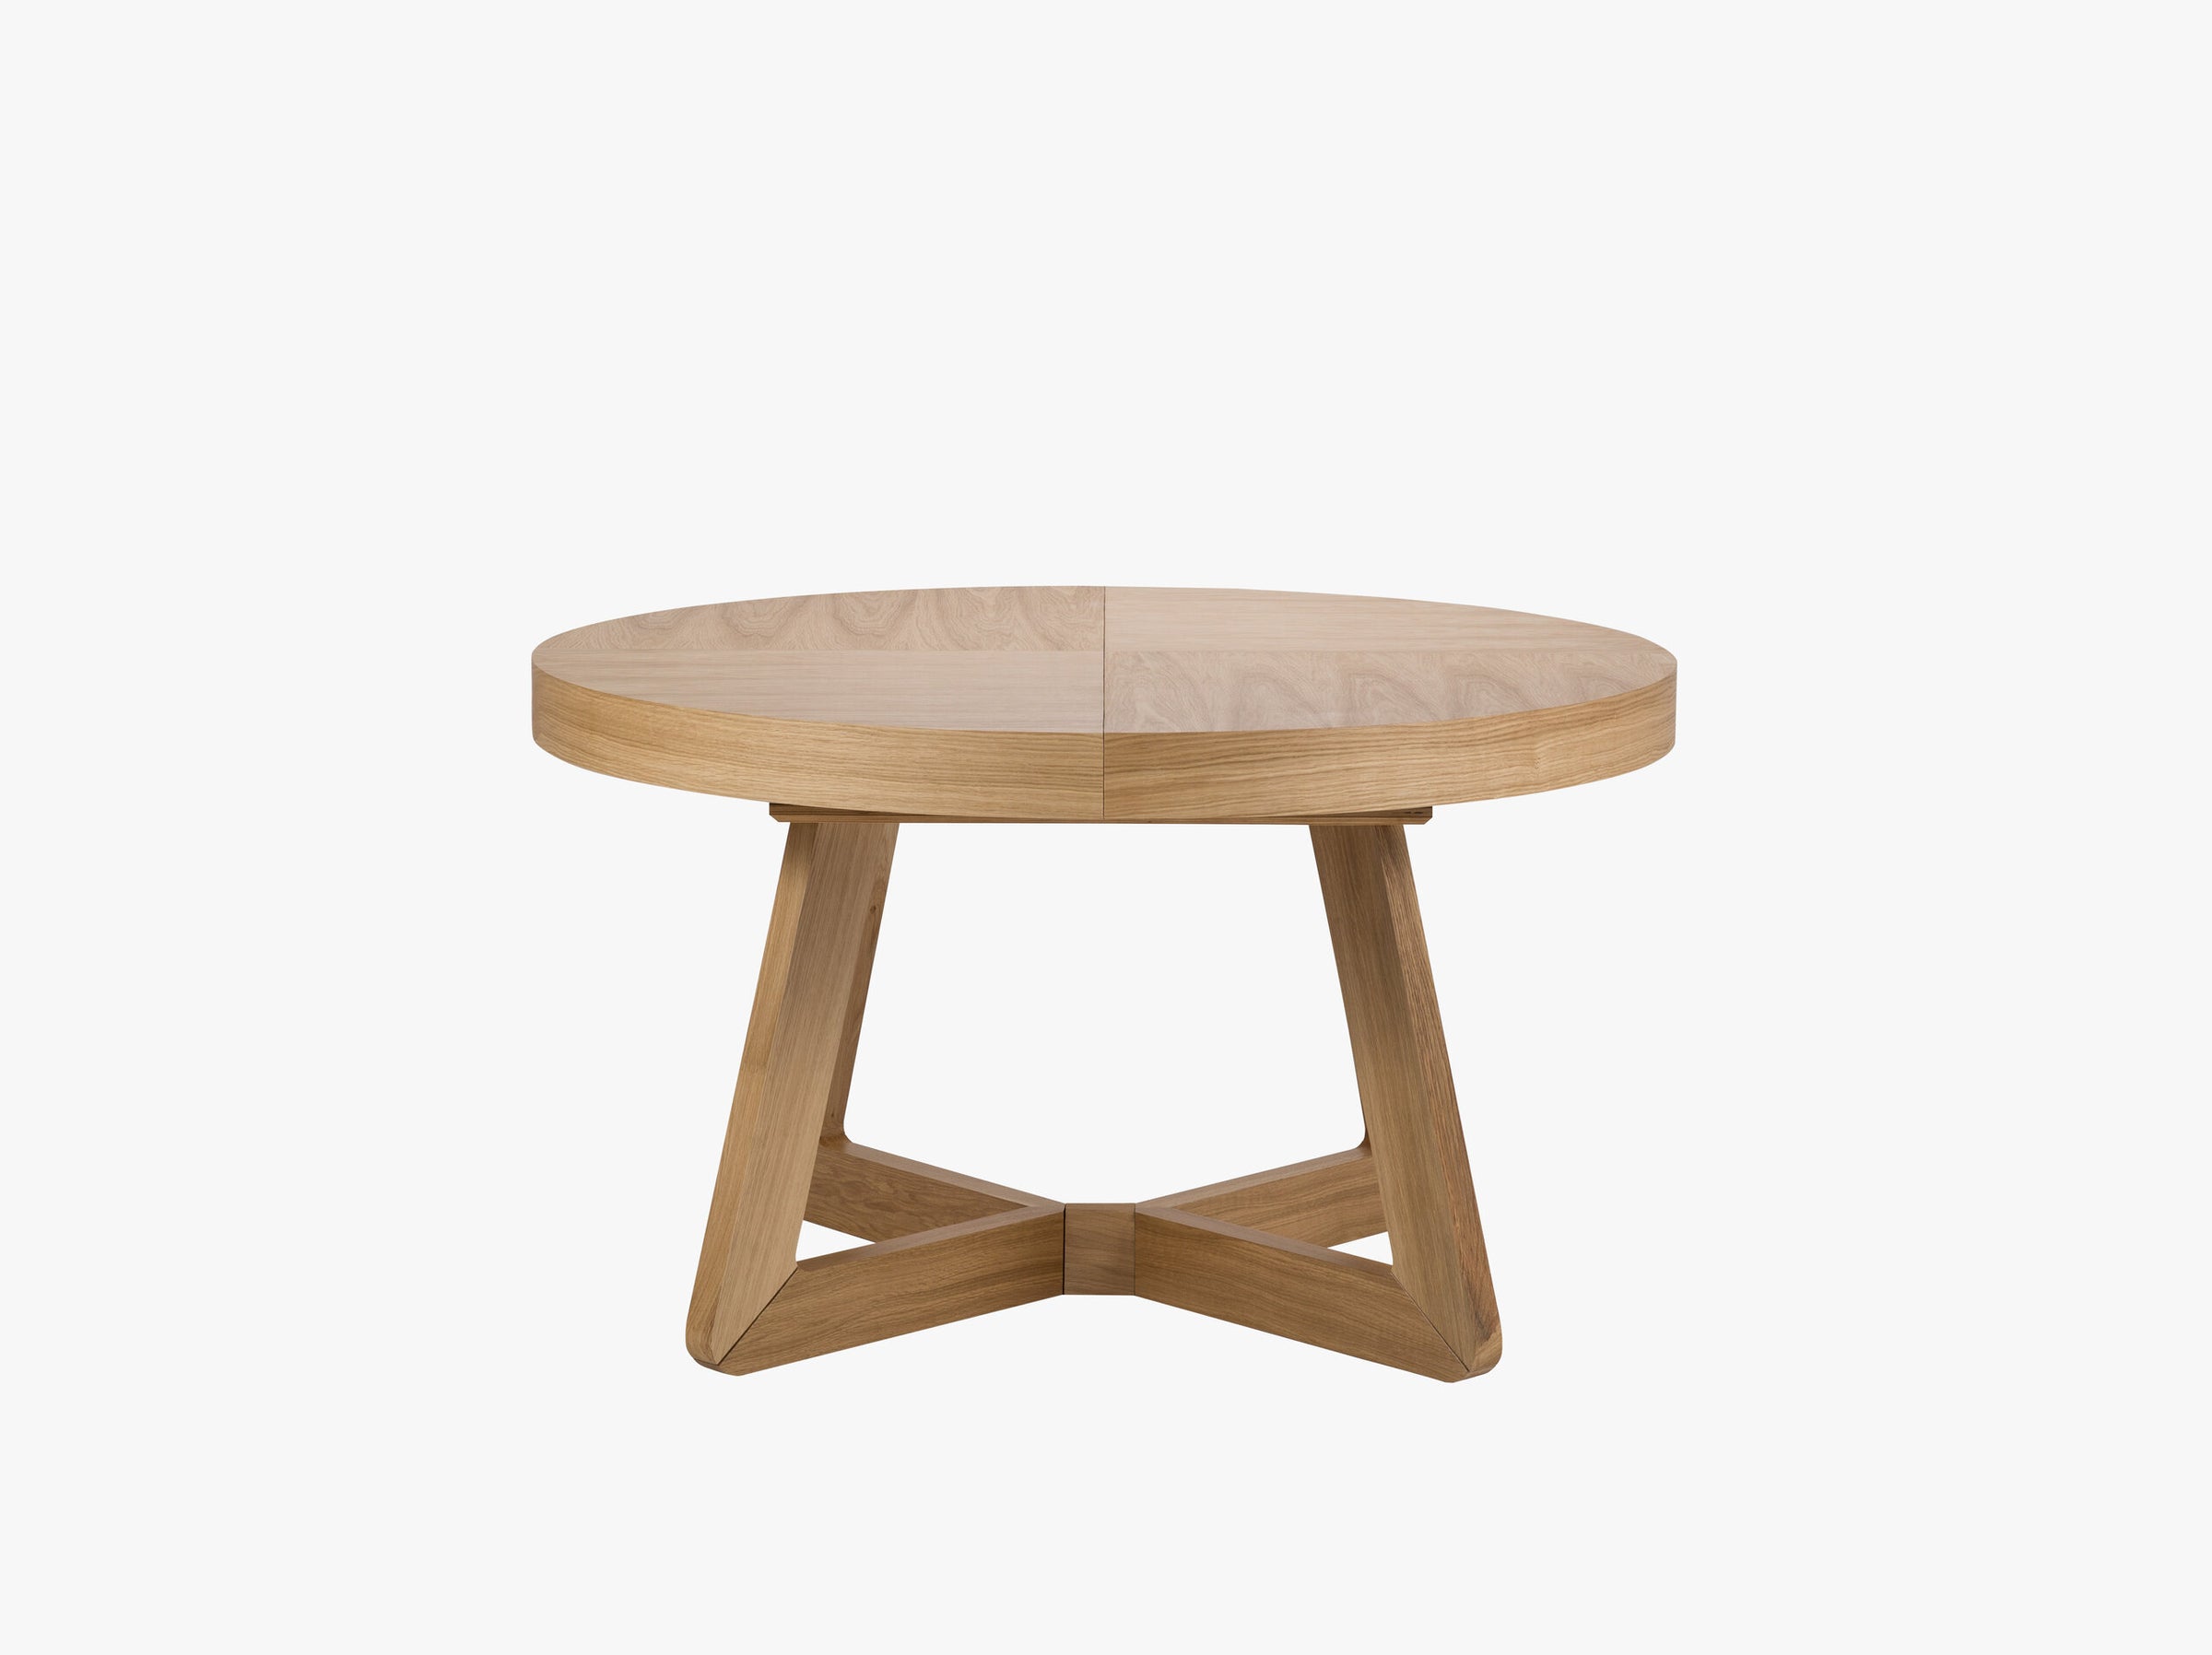 Dustin tables & chairs wood natural oak veneer